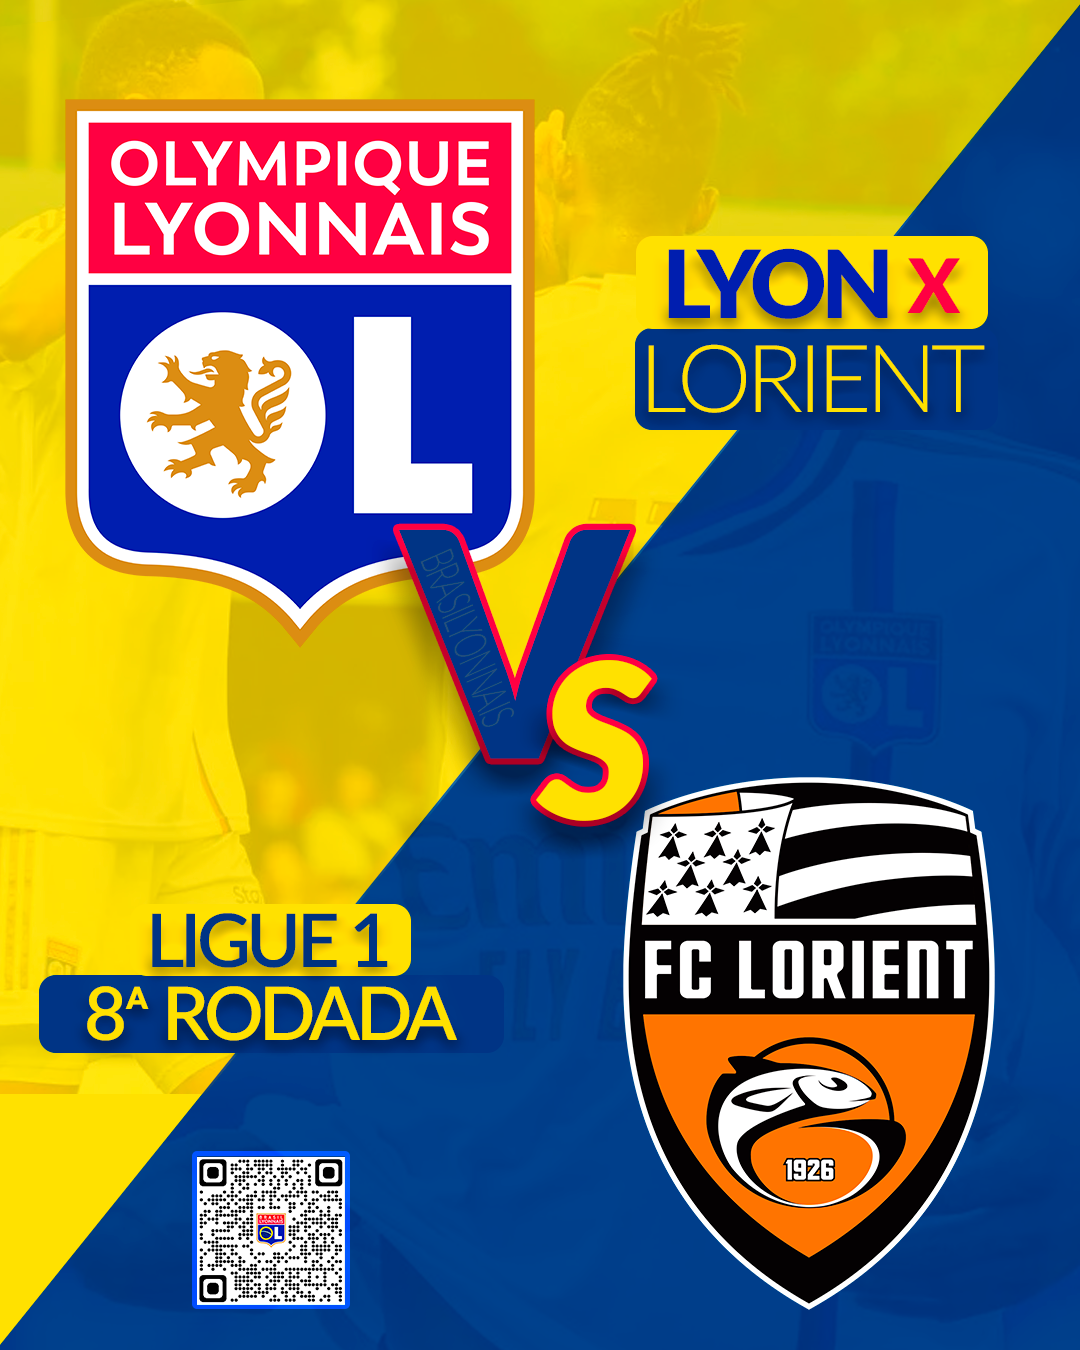 Jogar Fácil - FRANÇA/// LIGUE 1 58⏱️ Lorient 2-4